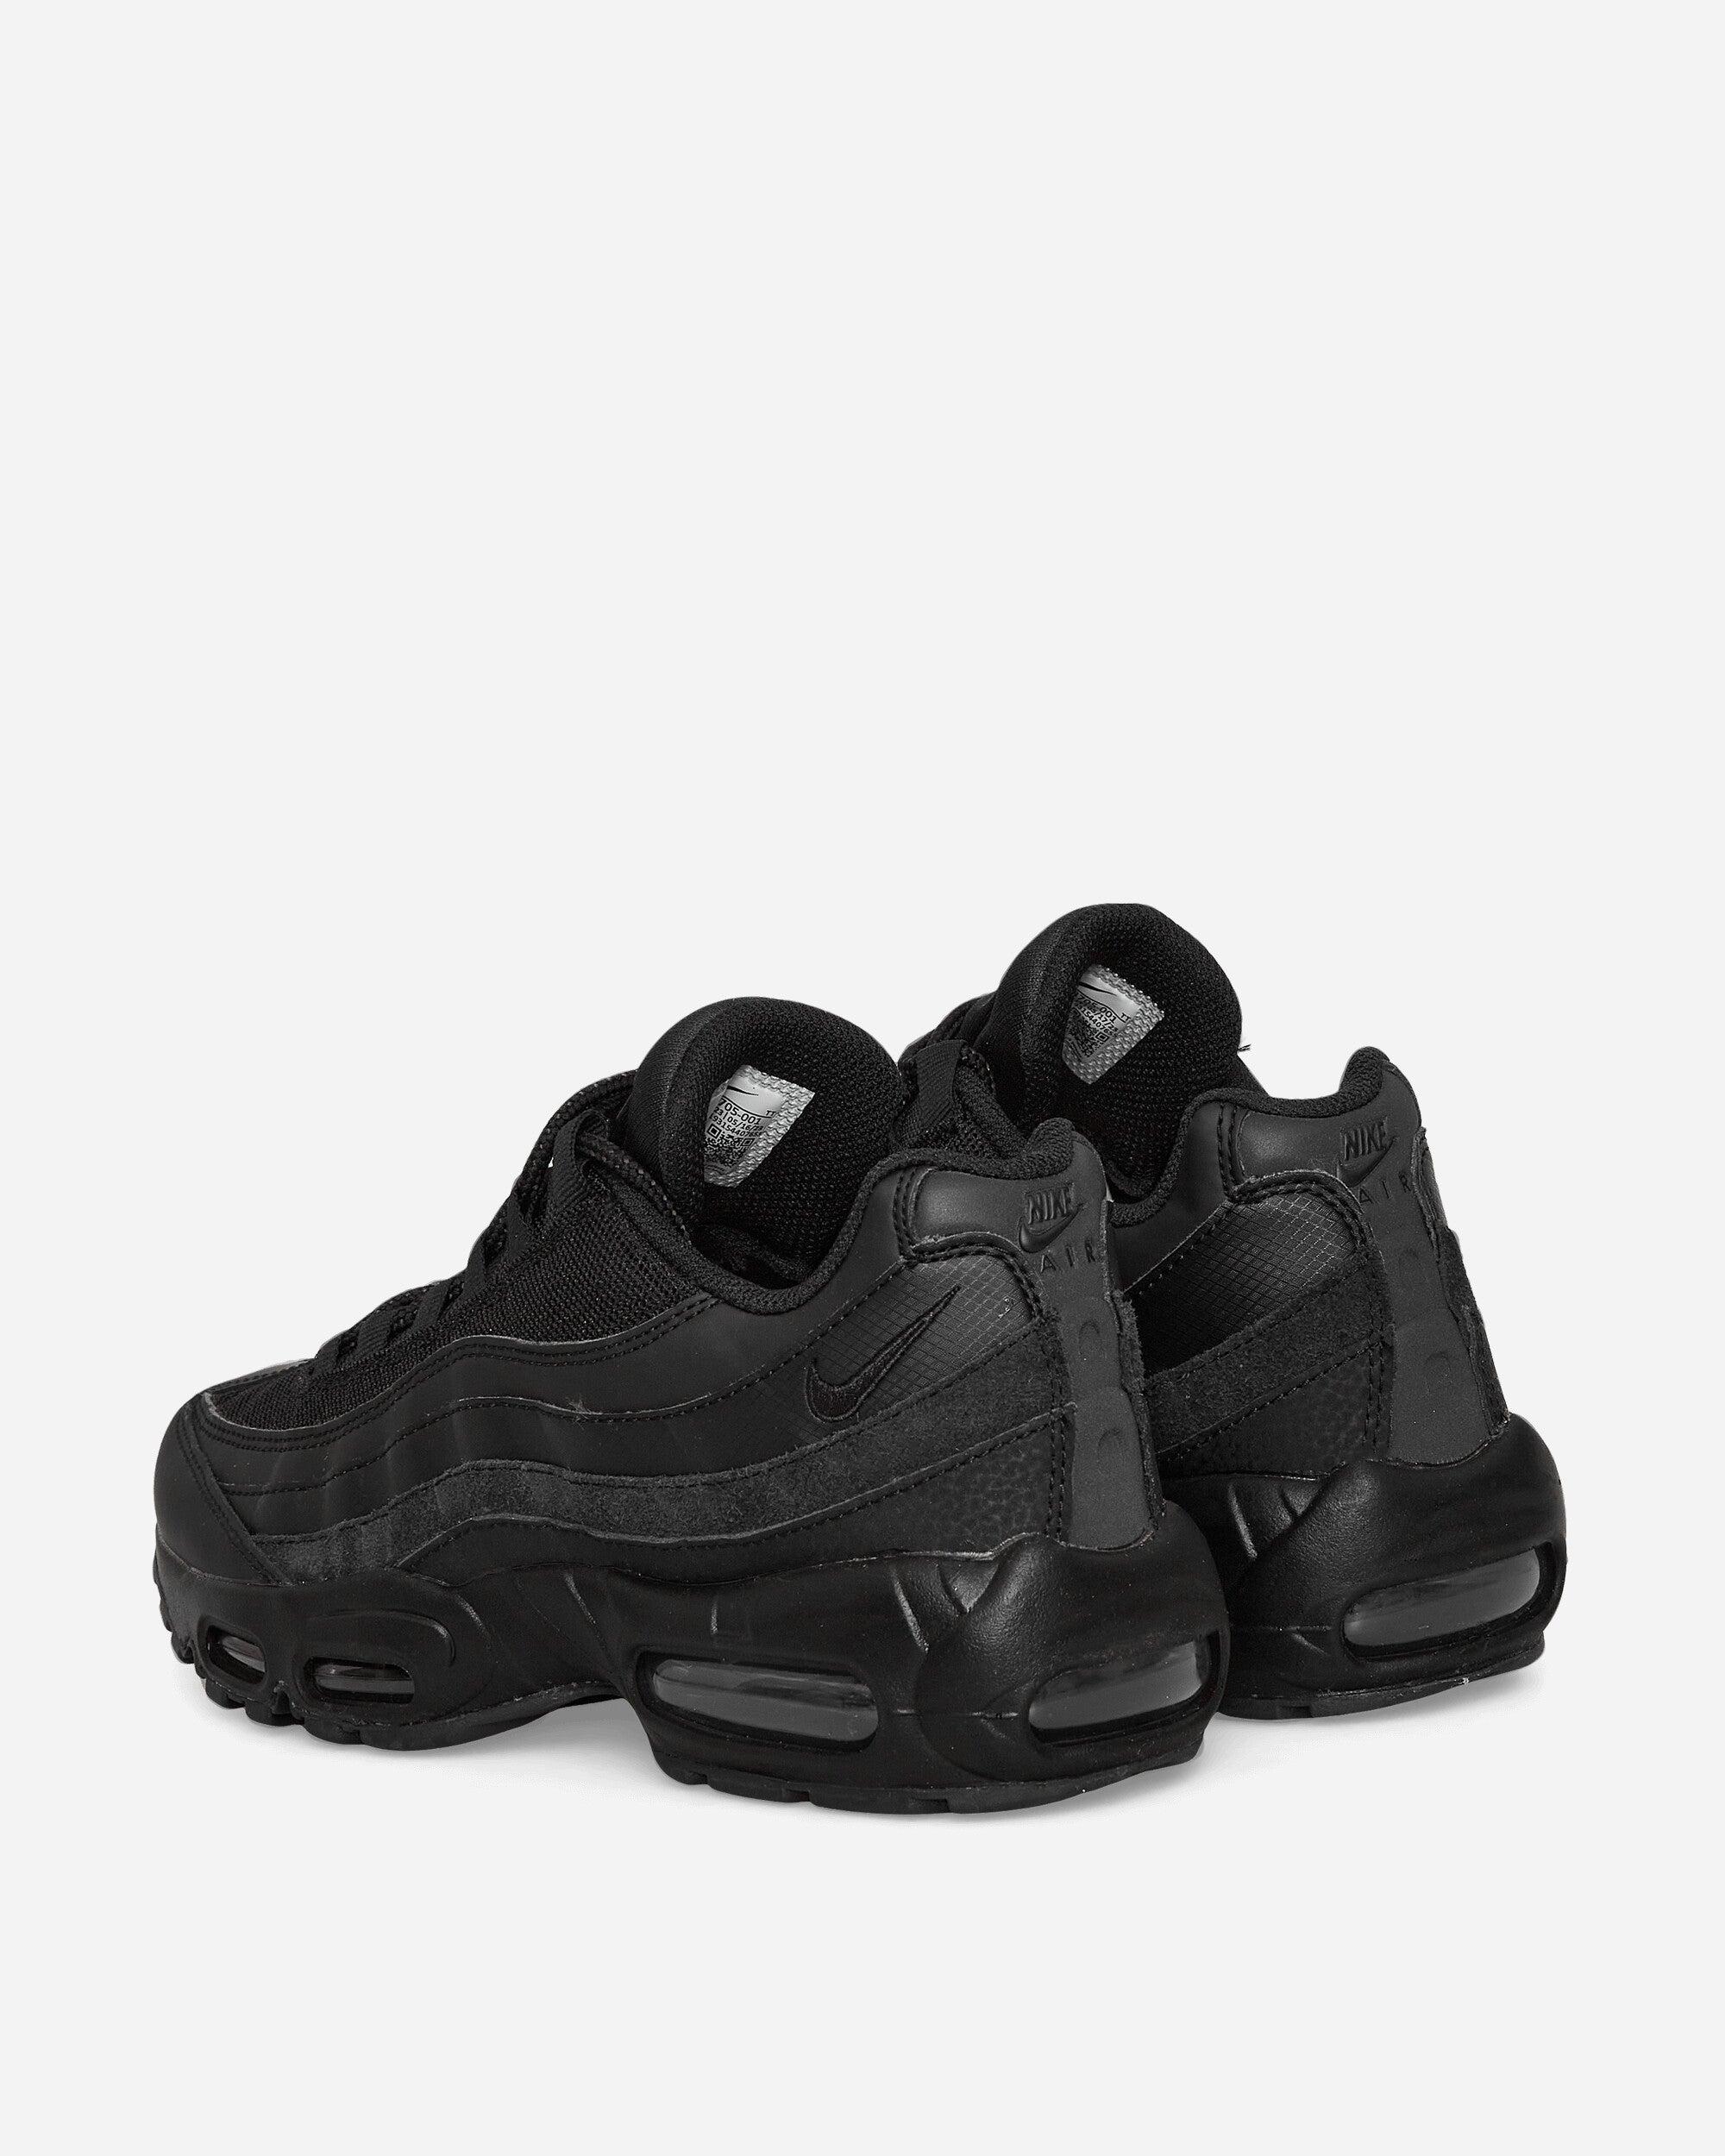 Nike Air Max 95 Essential Sneakers Black / Dark Grey for Men | Lyst